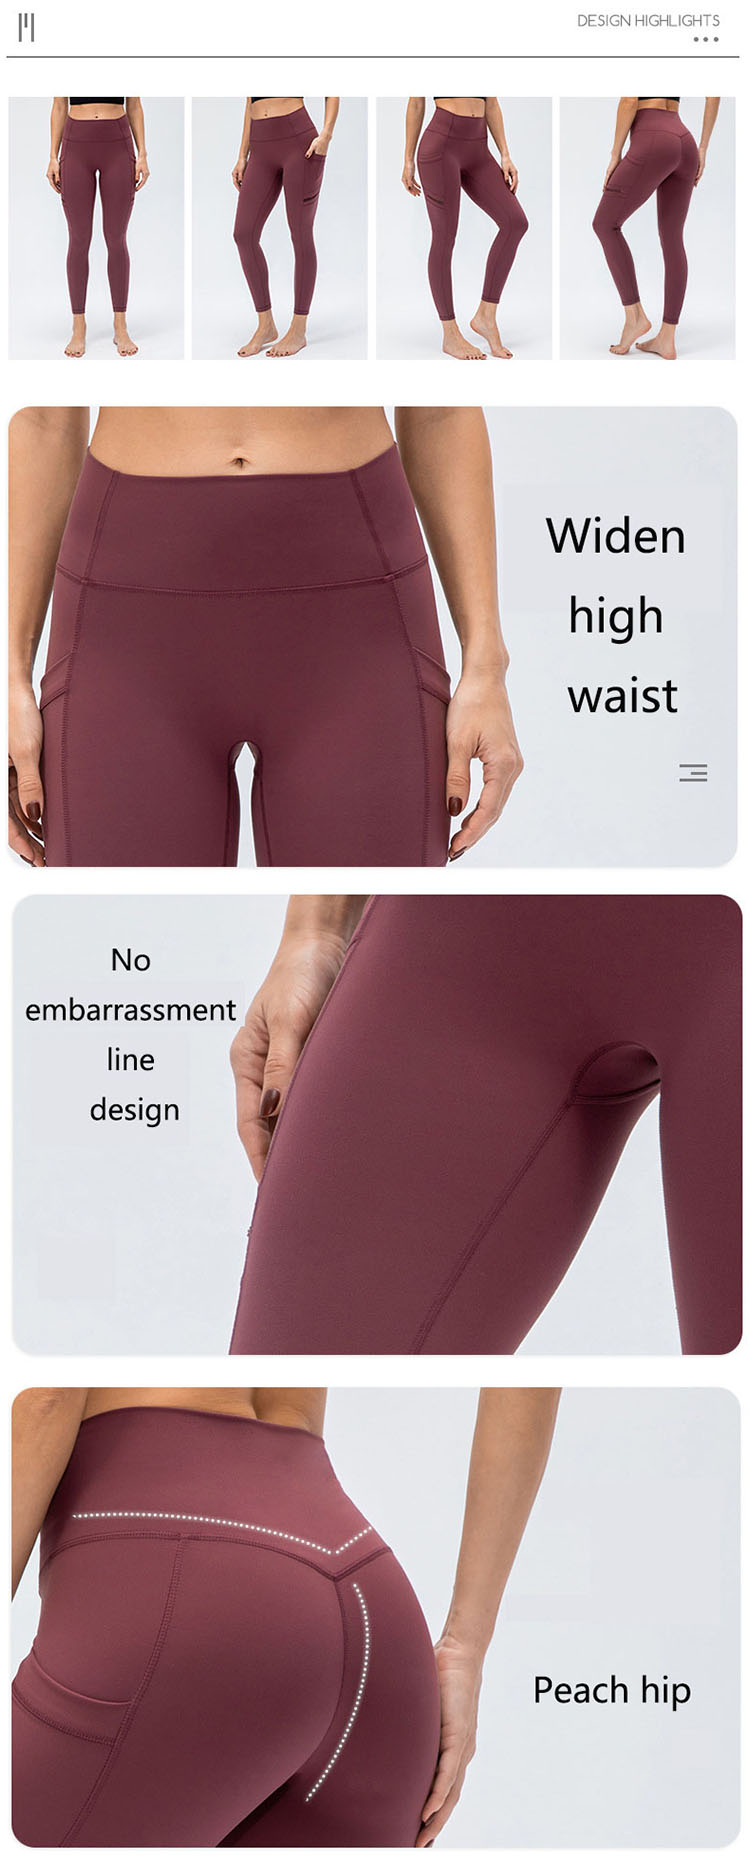 Betabrand dress pant yoga pants - Activewear manufacturer